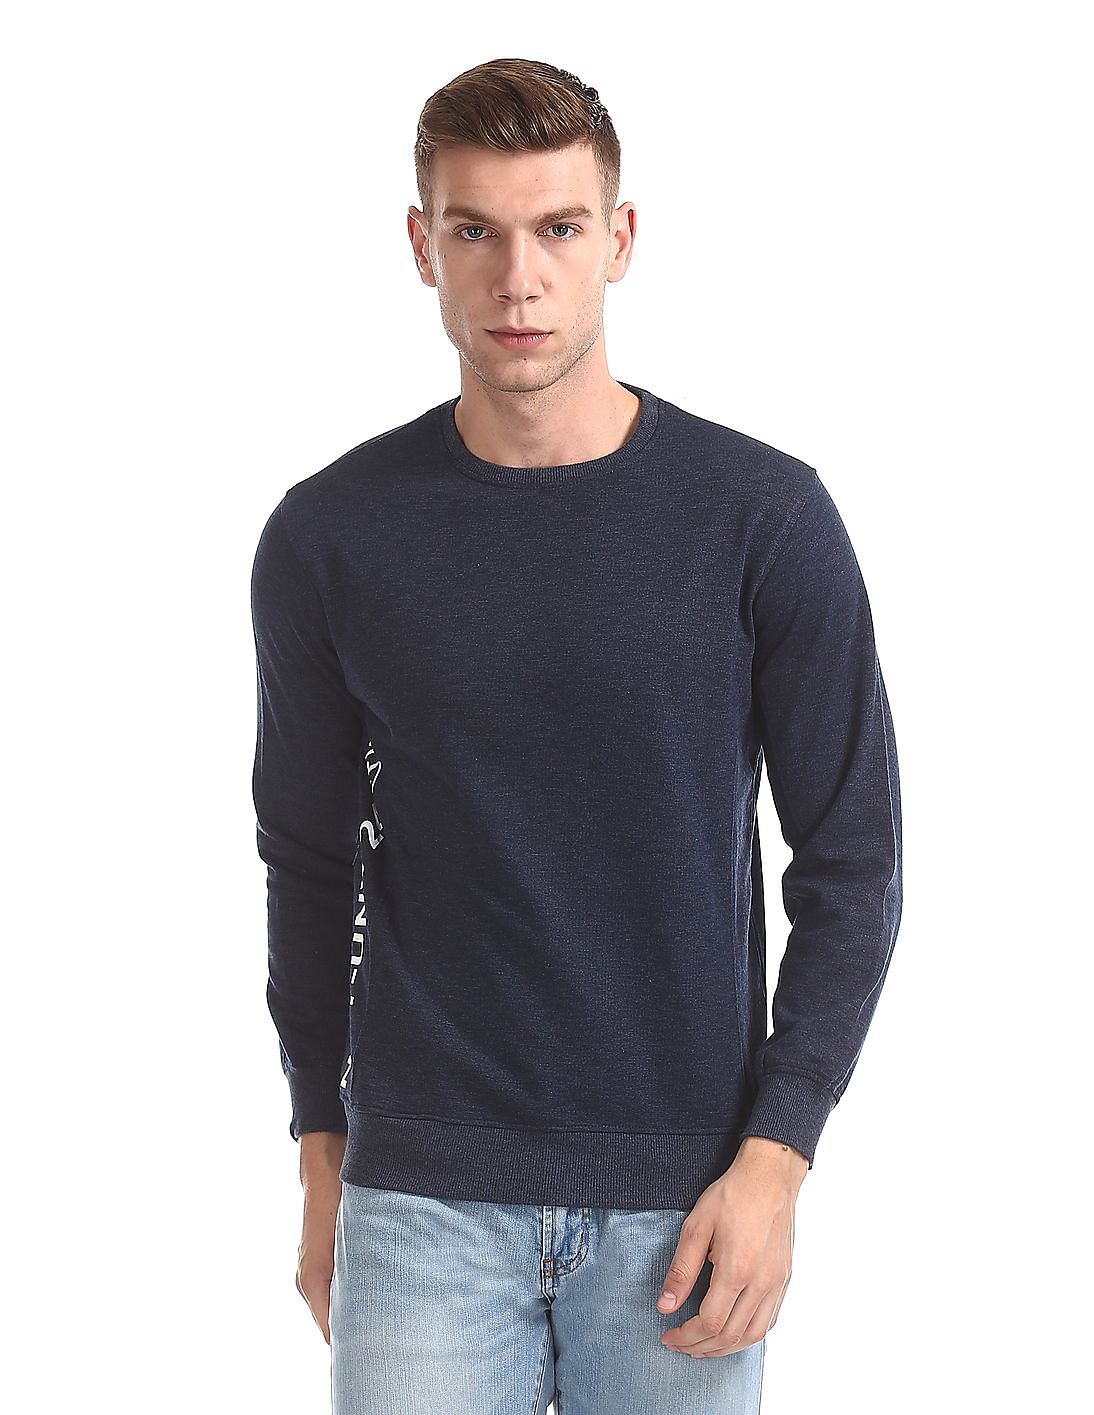 Buy Men Zipper Pocket Crew Neck Sweatshirt online at NNNOW.com